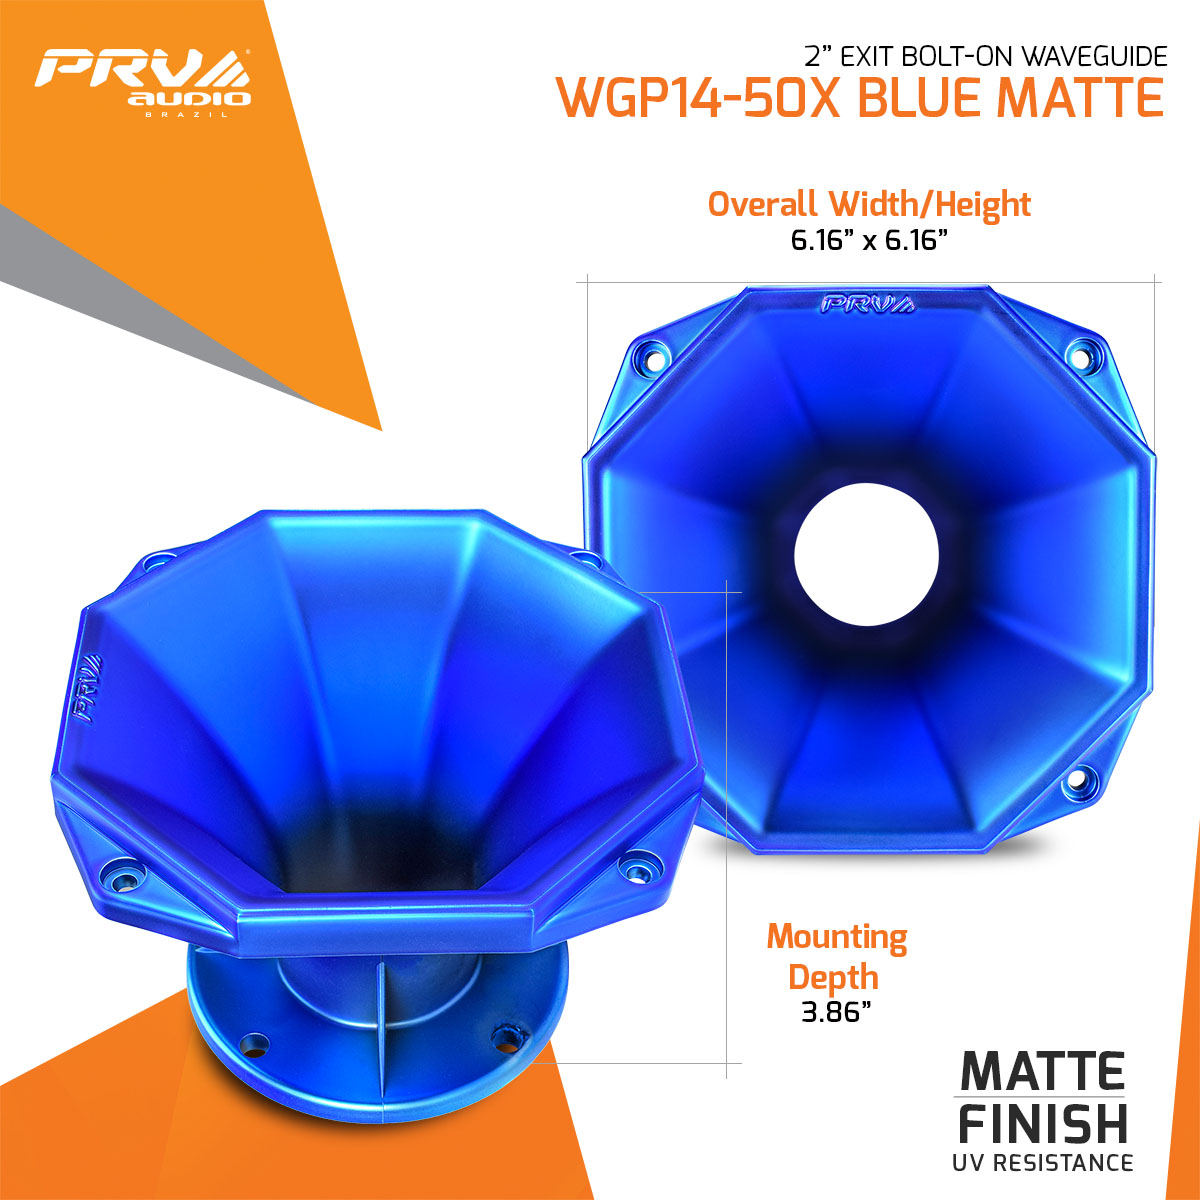 WGP14-50X - Dims Infographic - BLUE MATTE